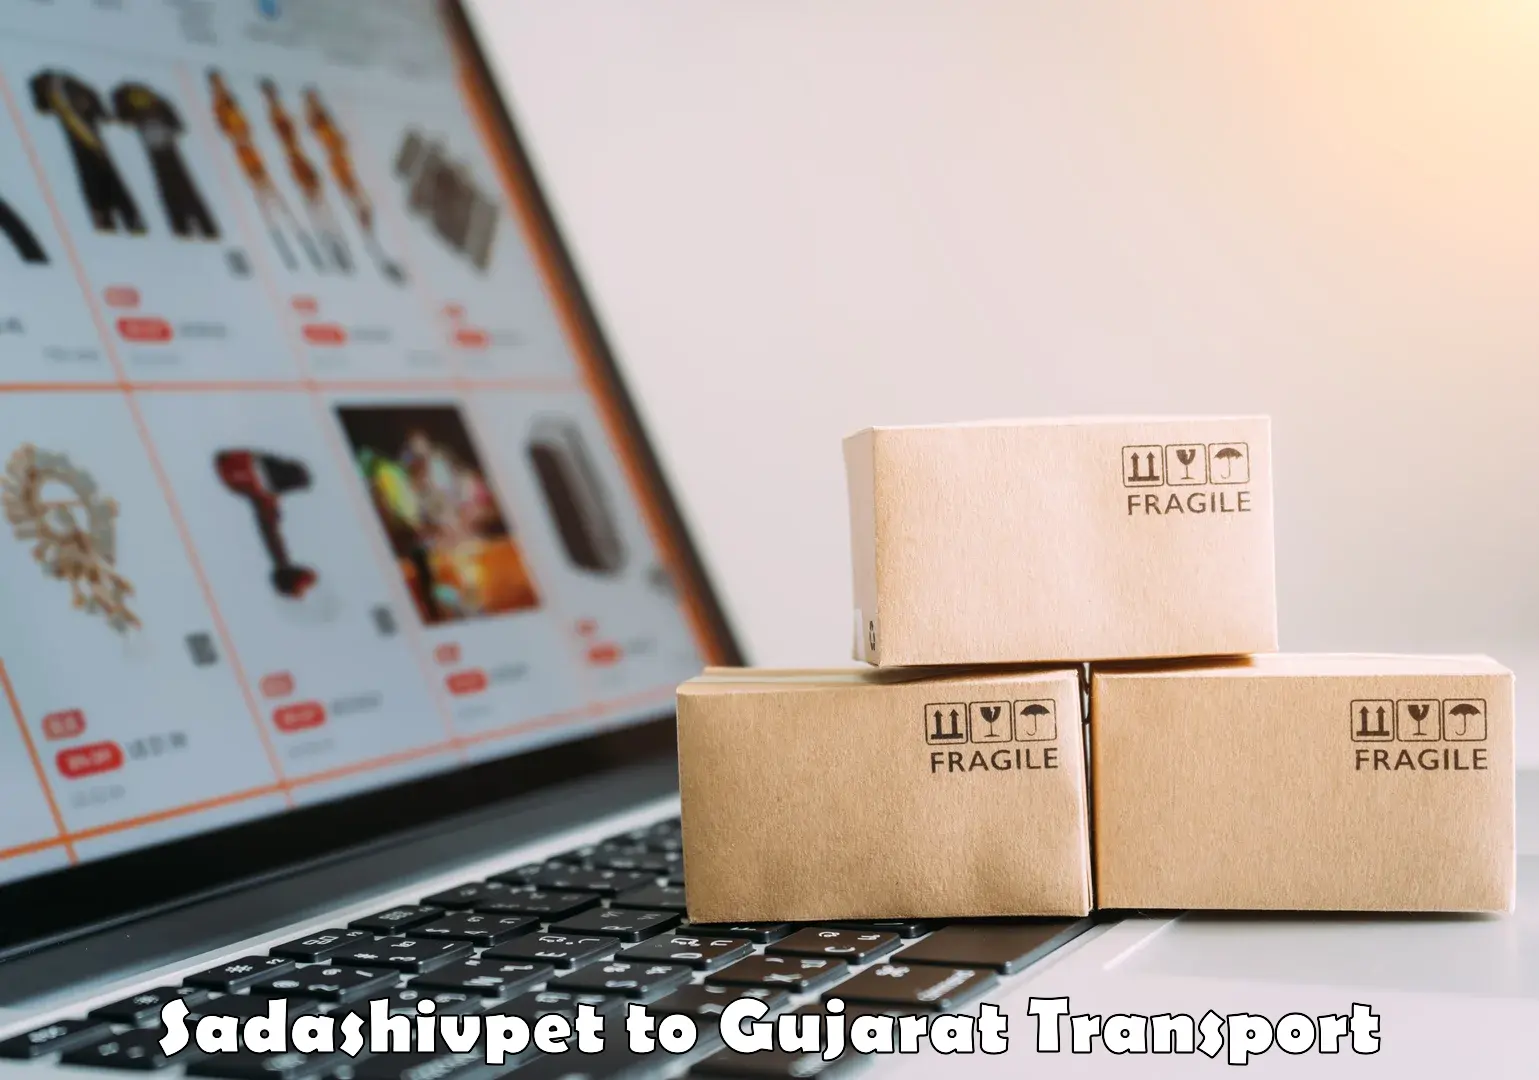 Container transportation services Sadashivpet to Patan Gujarat